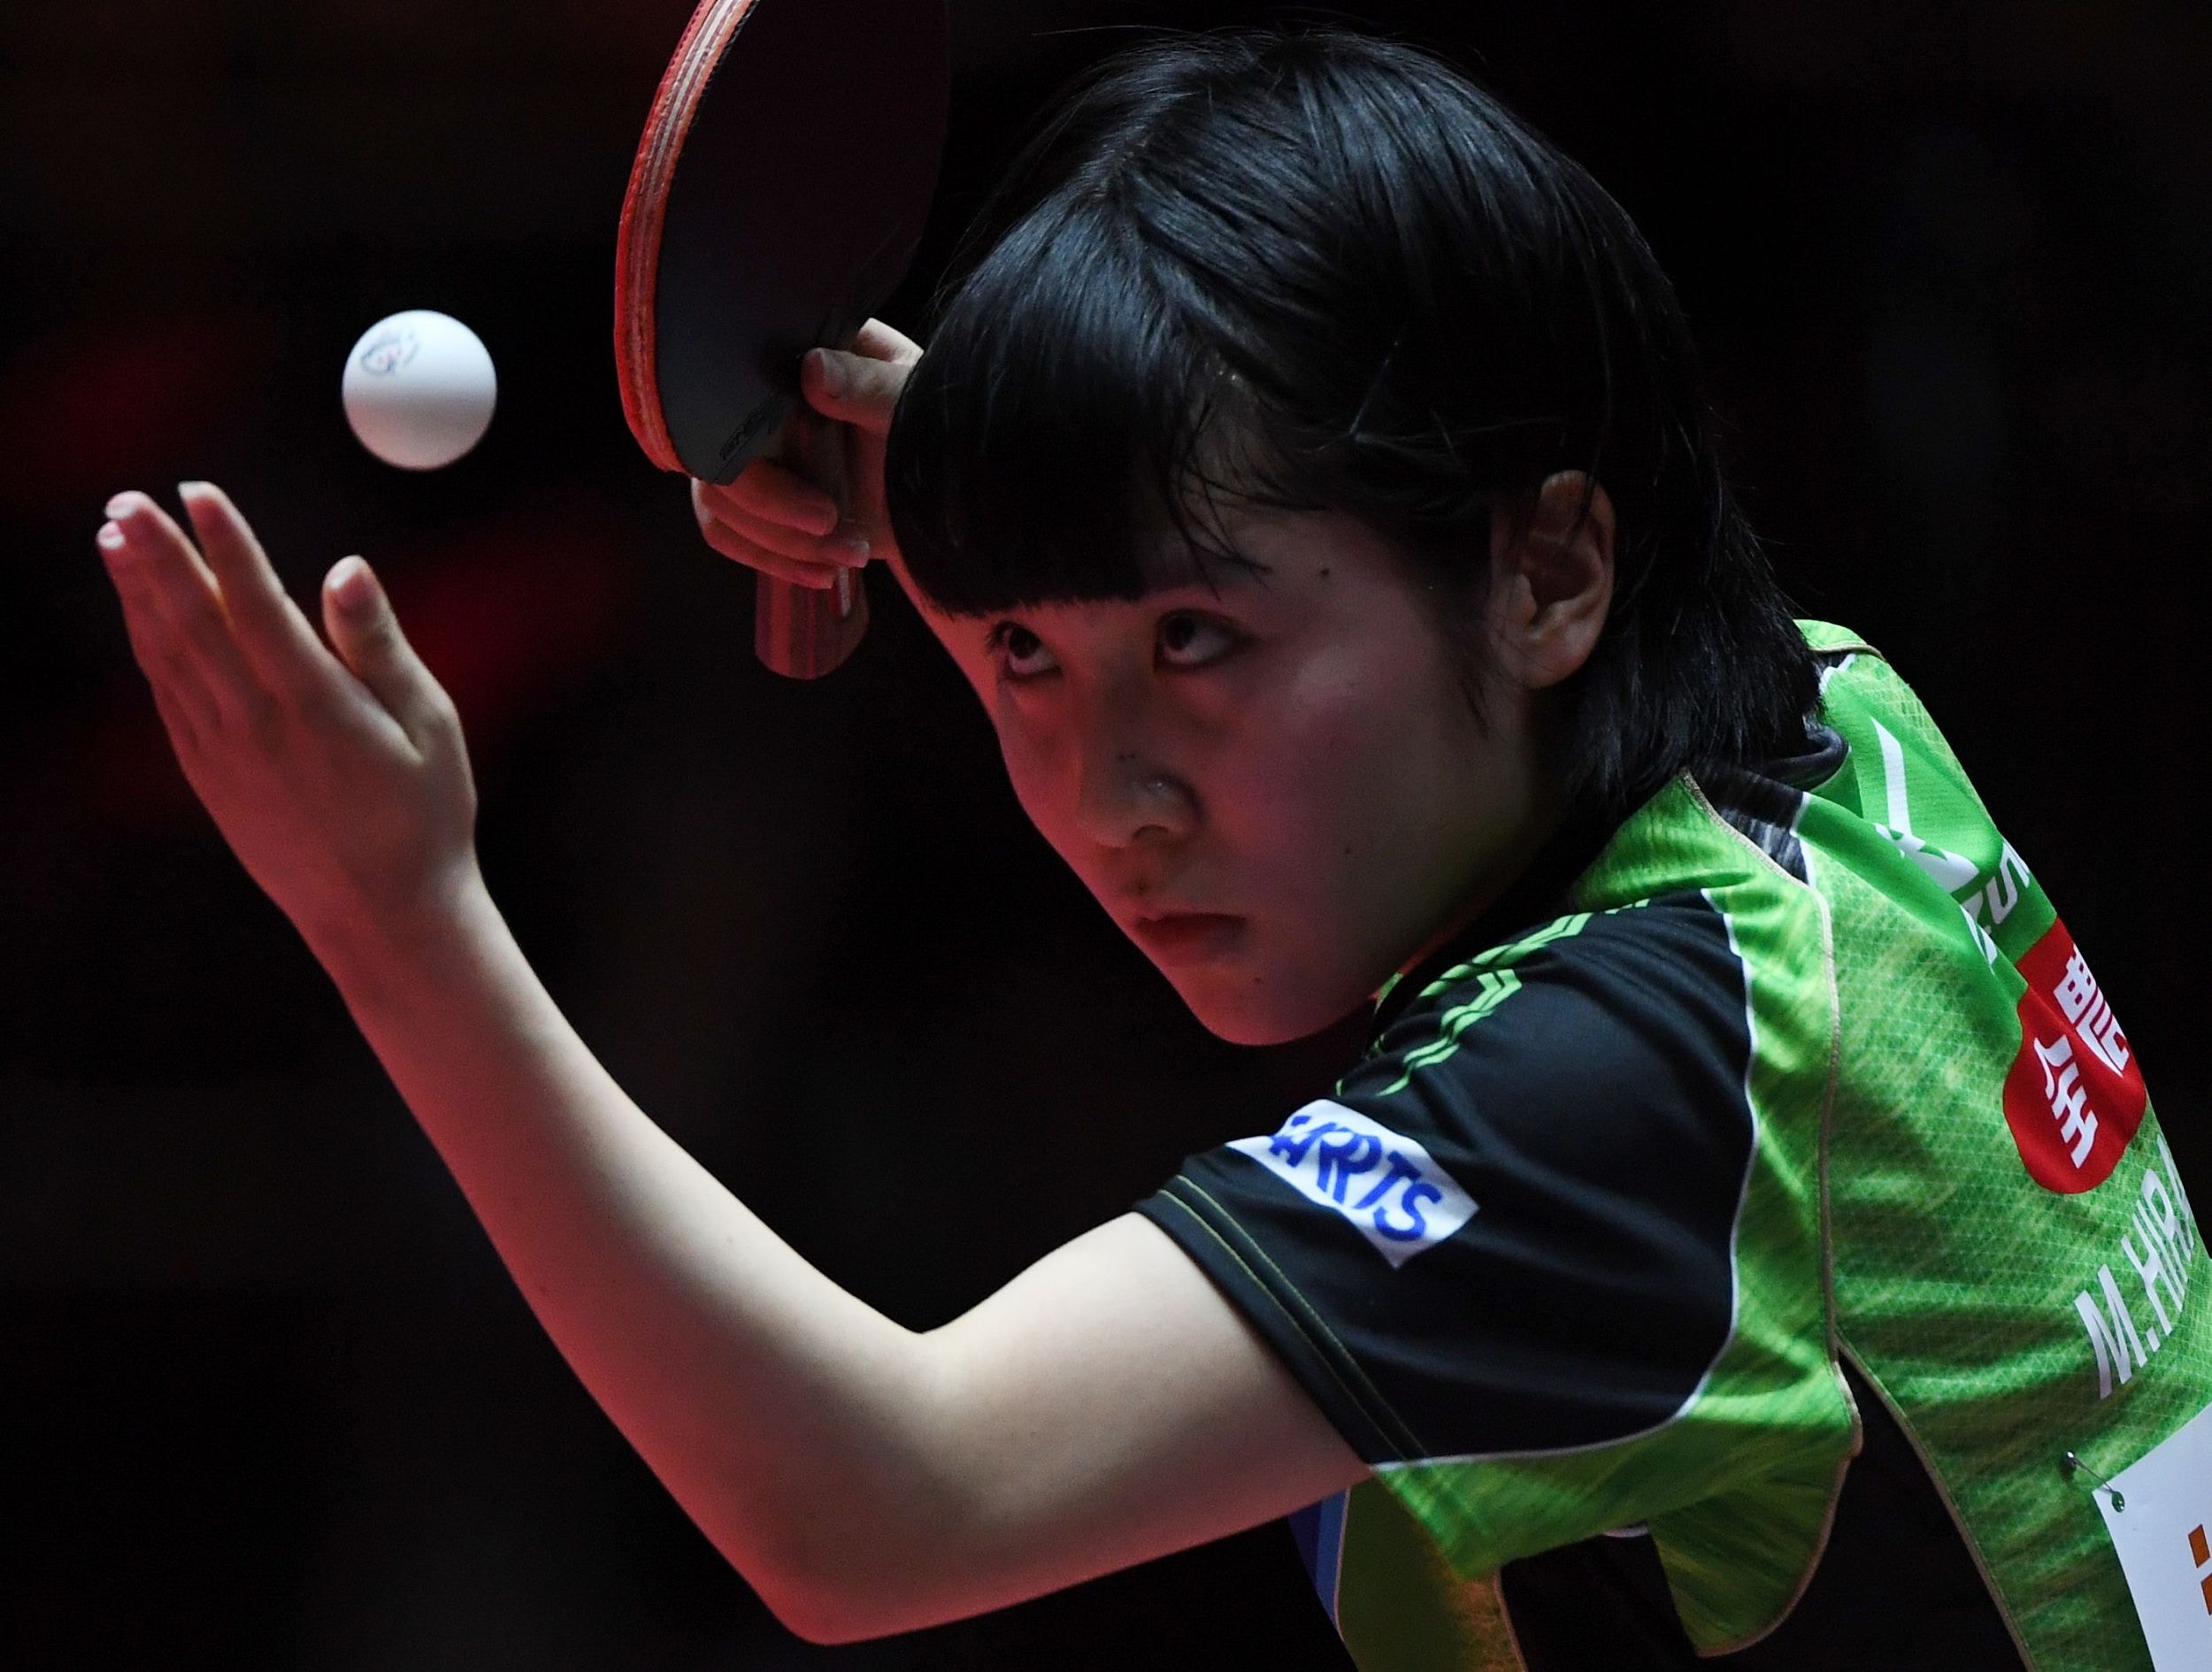 乒乓 17歲平野美宇去年戰績優異乒協派800萬日元獎金 香港01 即時體育